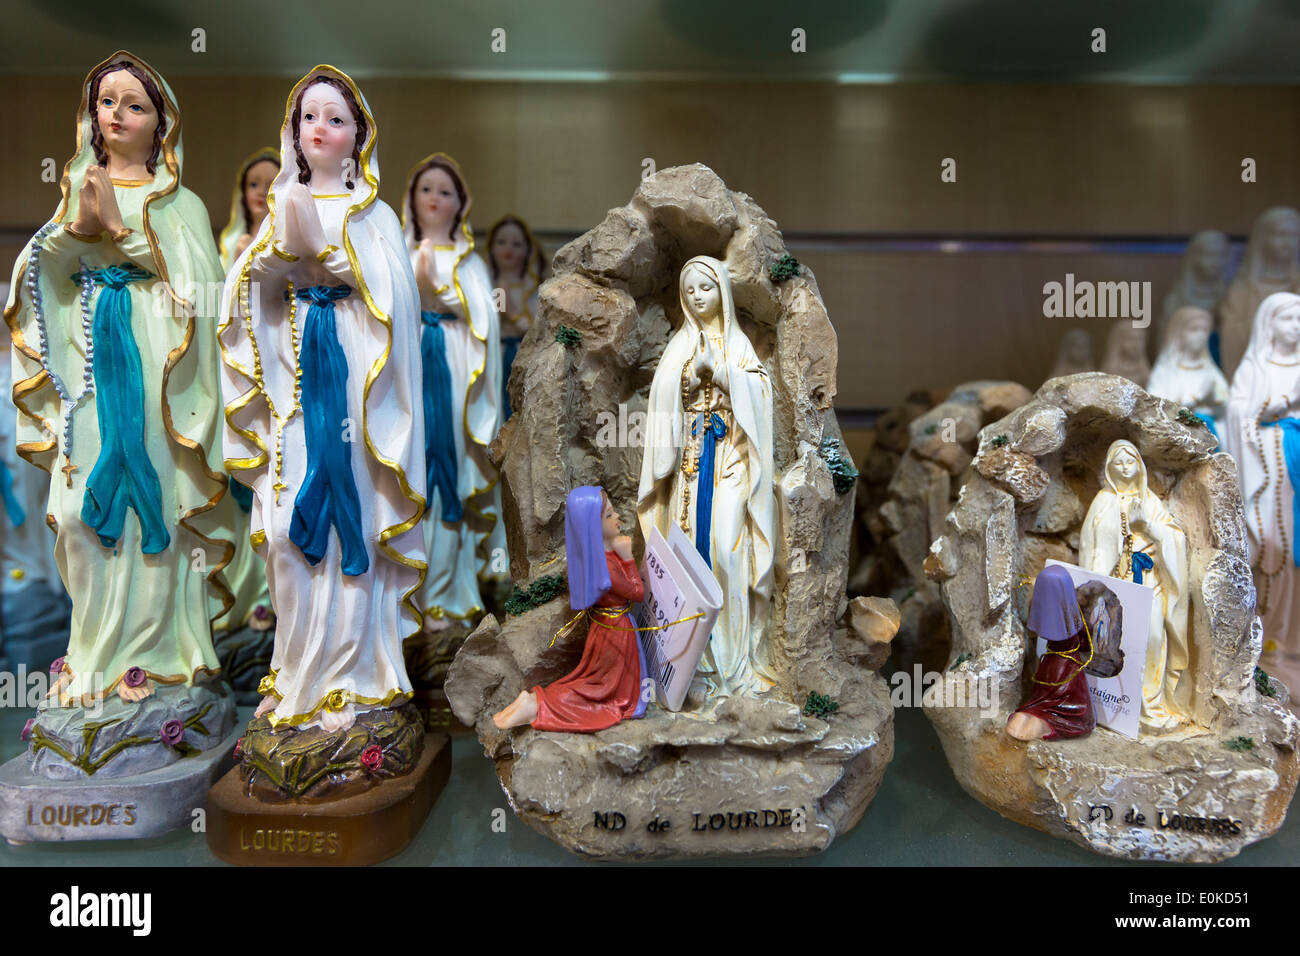 Icone Religiose e le statue della Madonna e di santa Bernadette al luogo di pellegrinaggio di Lourdes nel sud della Francia Foto Stock